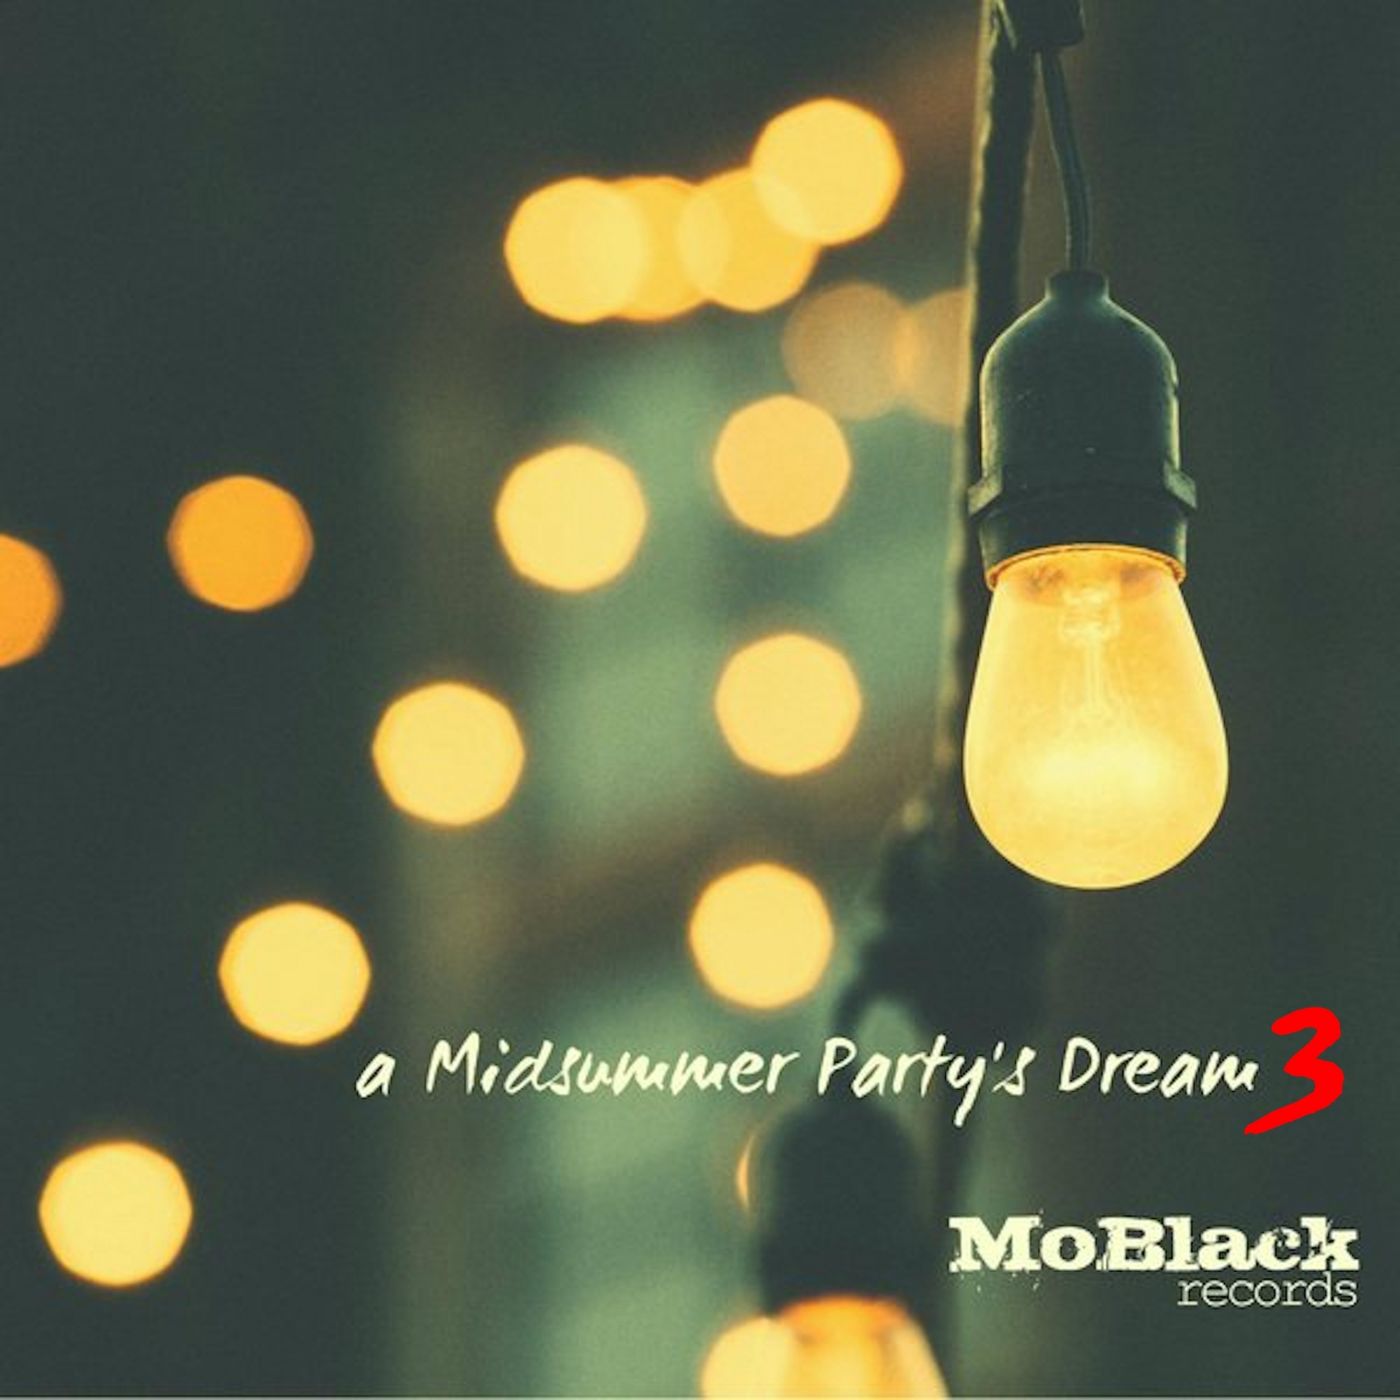 VA - A Midsummer Party's Dream, Vol. 3 / MoBlack Records